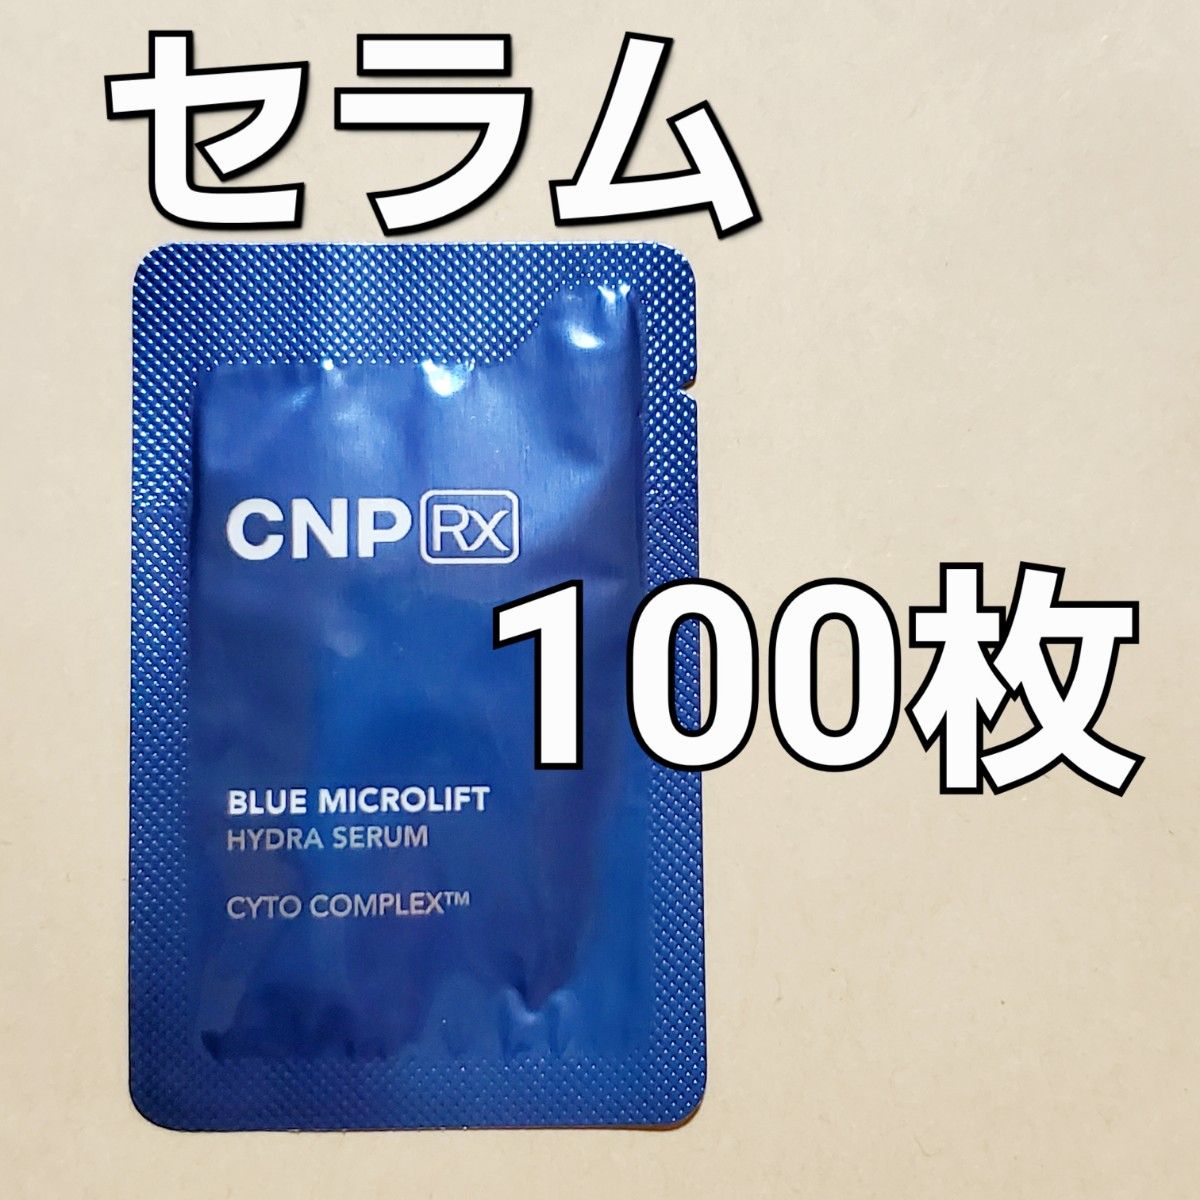 CNP Rx ブルー マイクロリフト ハイドラ セラム 1ml ×100